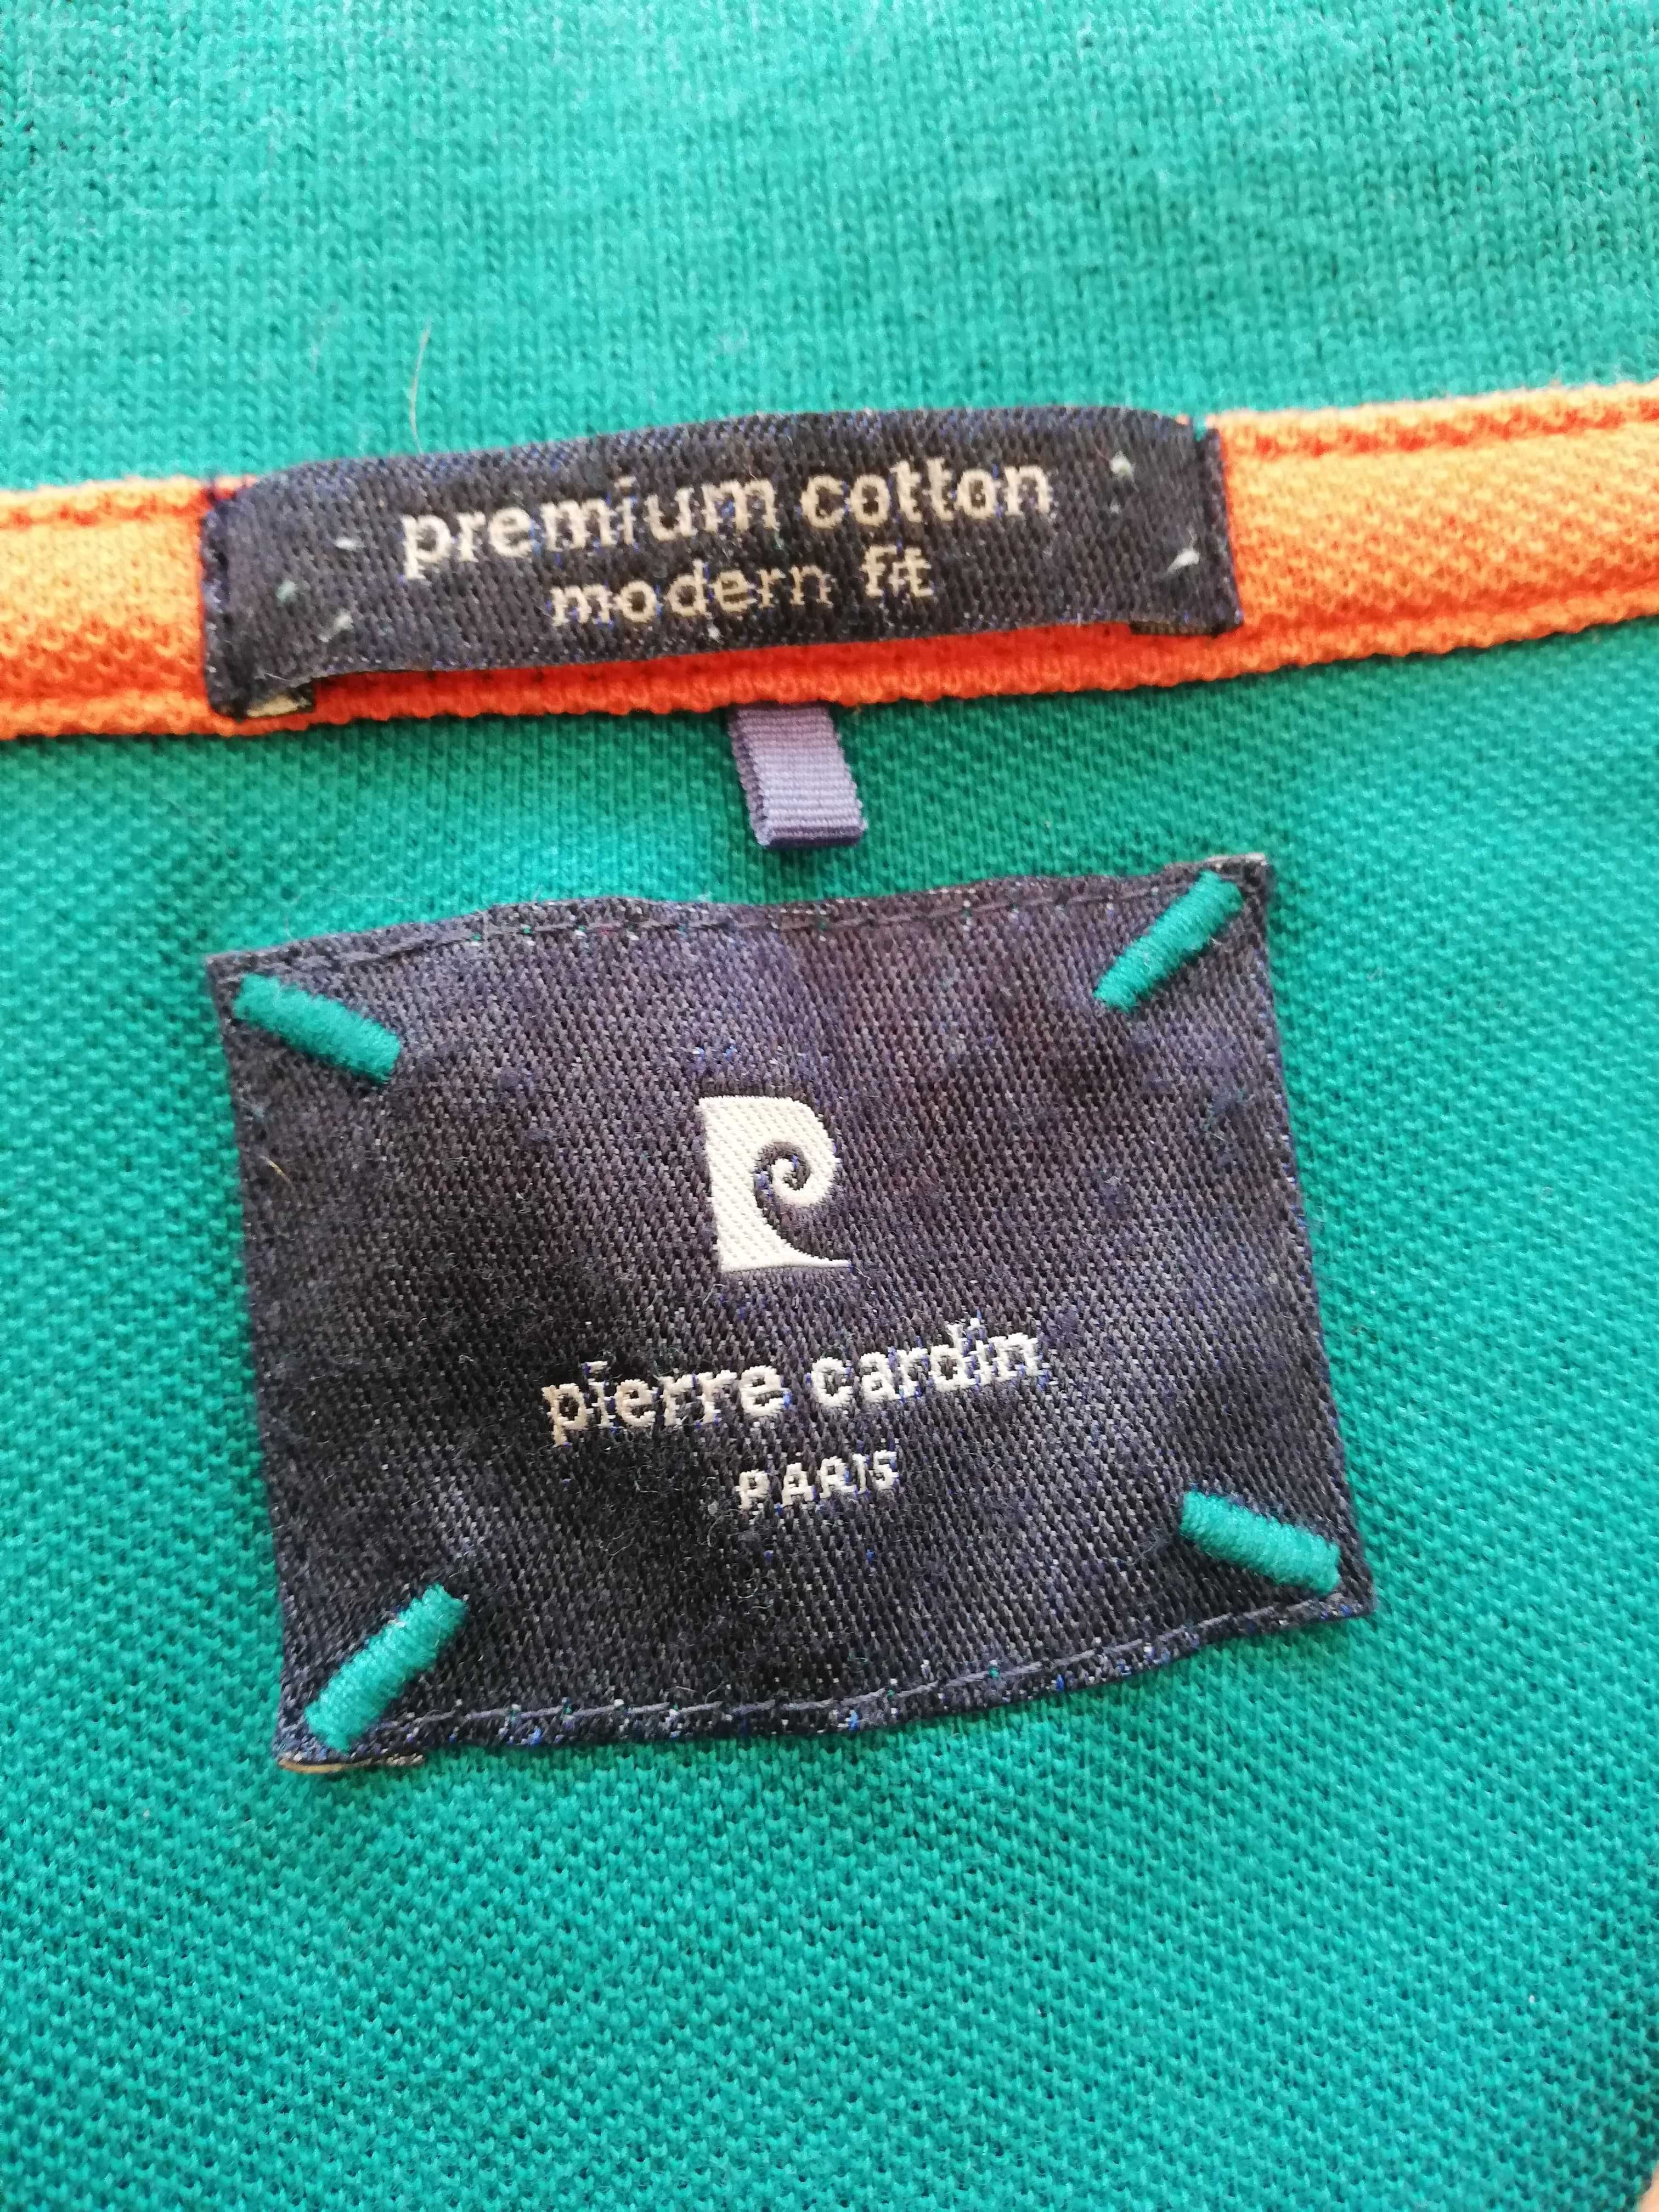 Pierre Cardin  6XL, bardzoo duże, stan bdb, bawełna, zielony